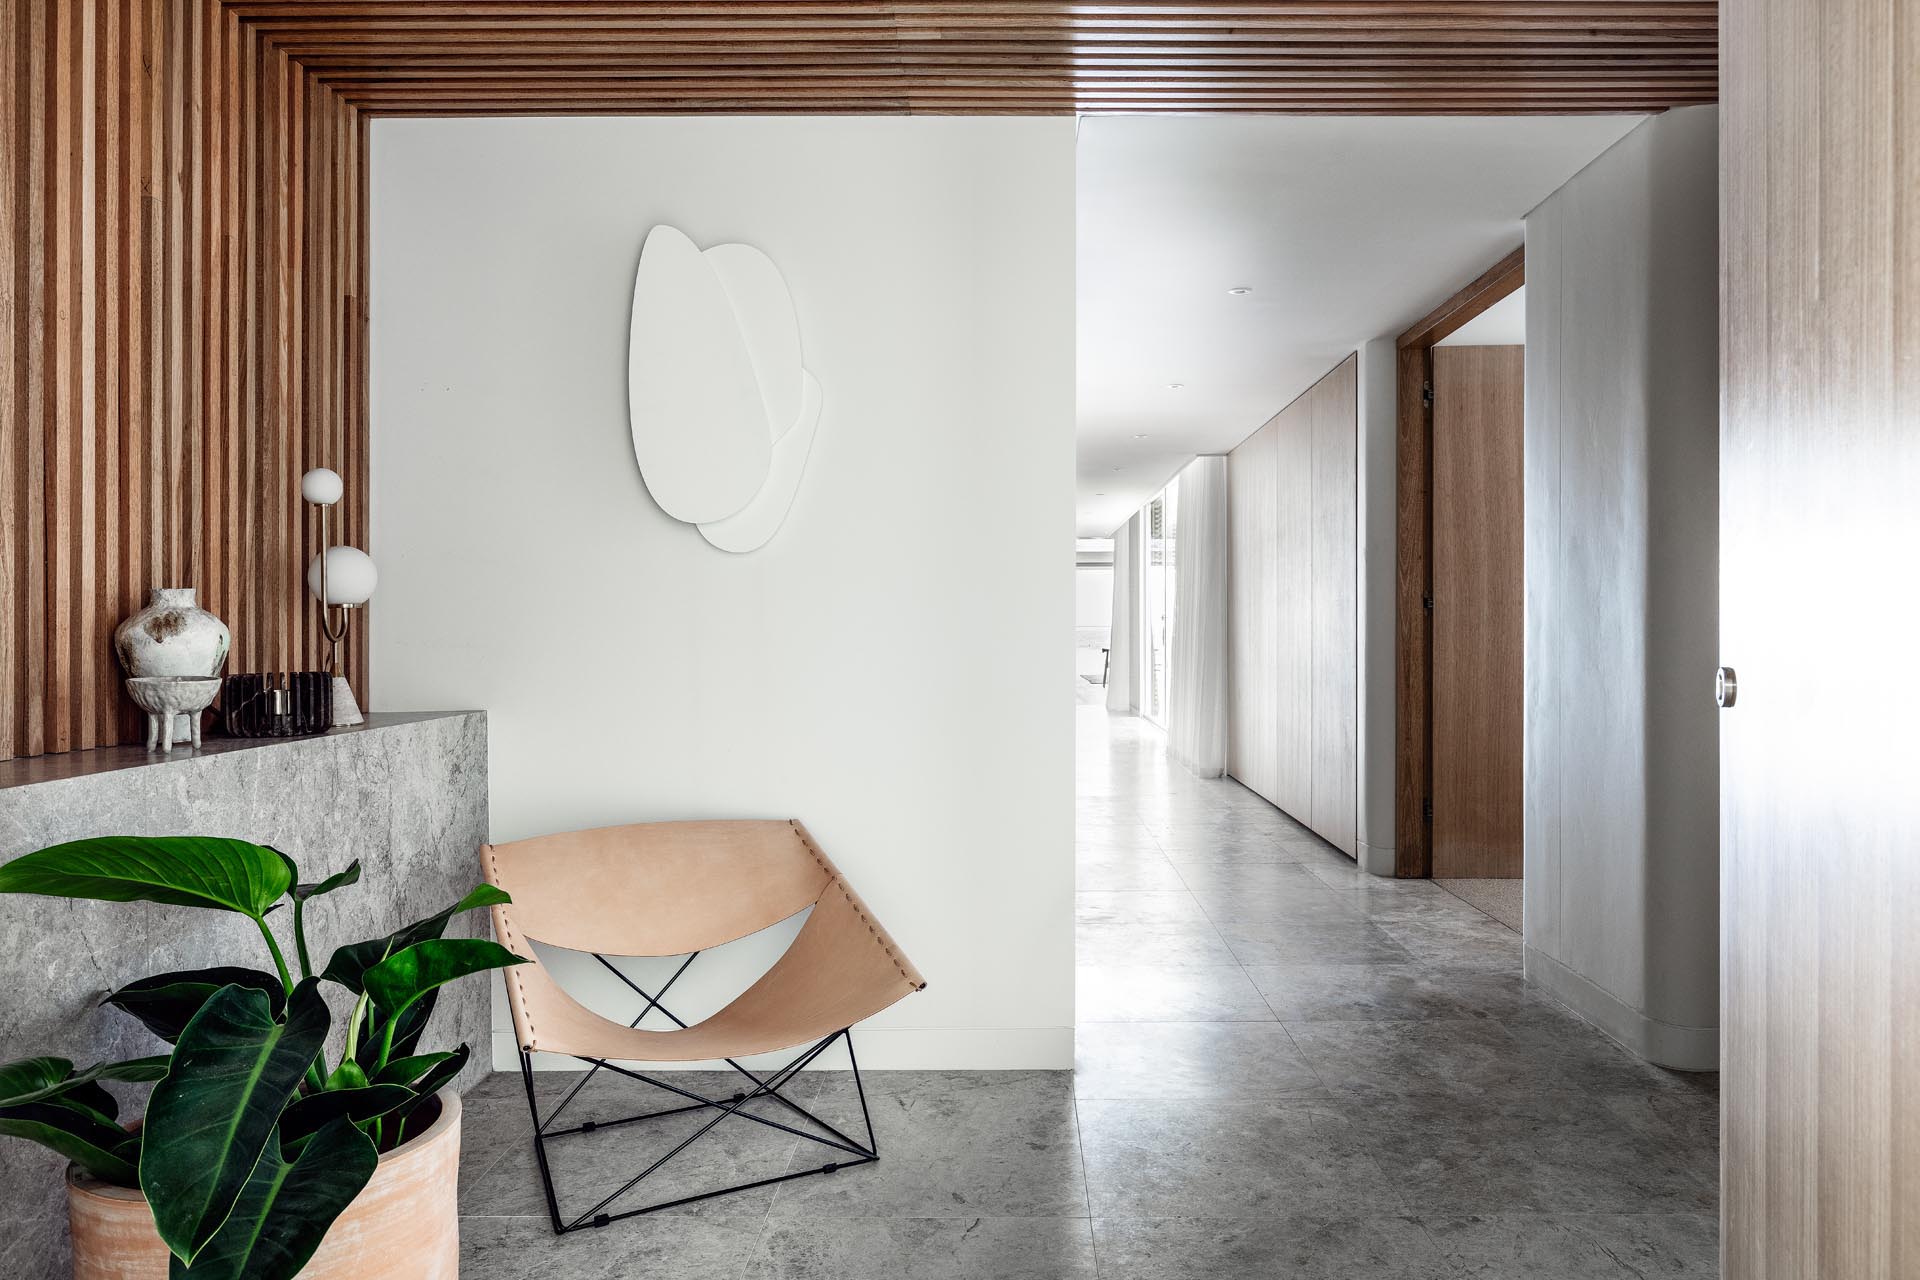 Современная прихожая с кожаным креслом и стеной из деревянных реек, переходящей в потолок.